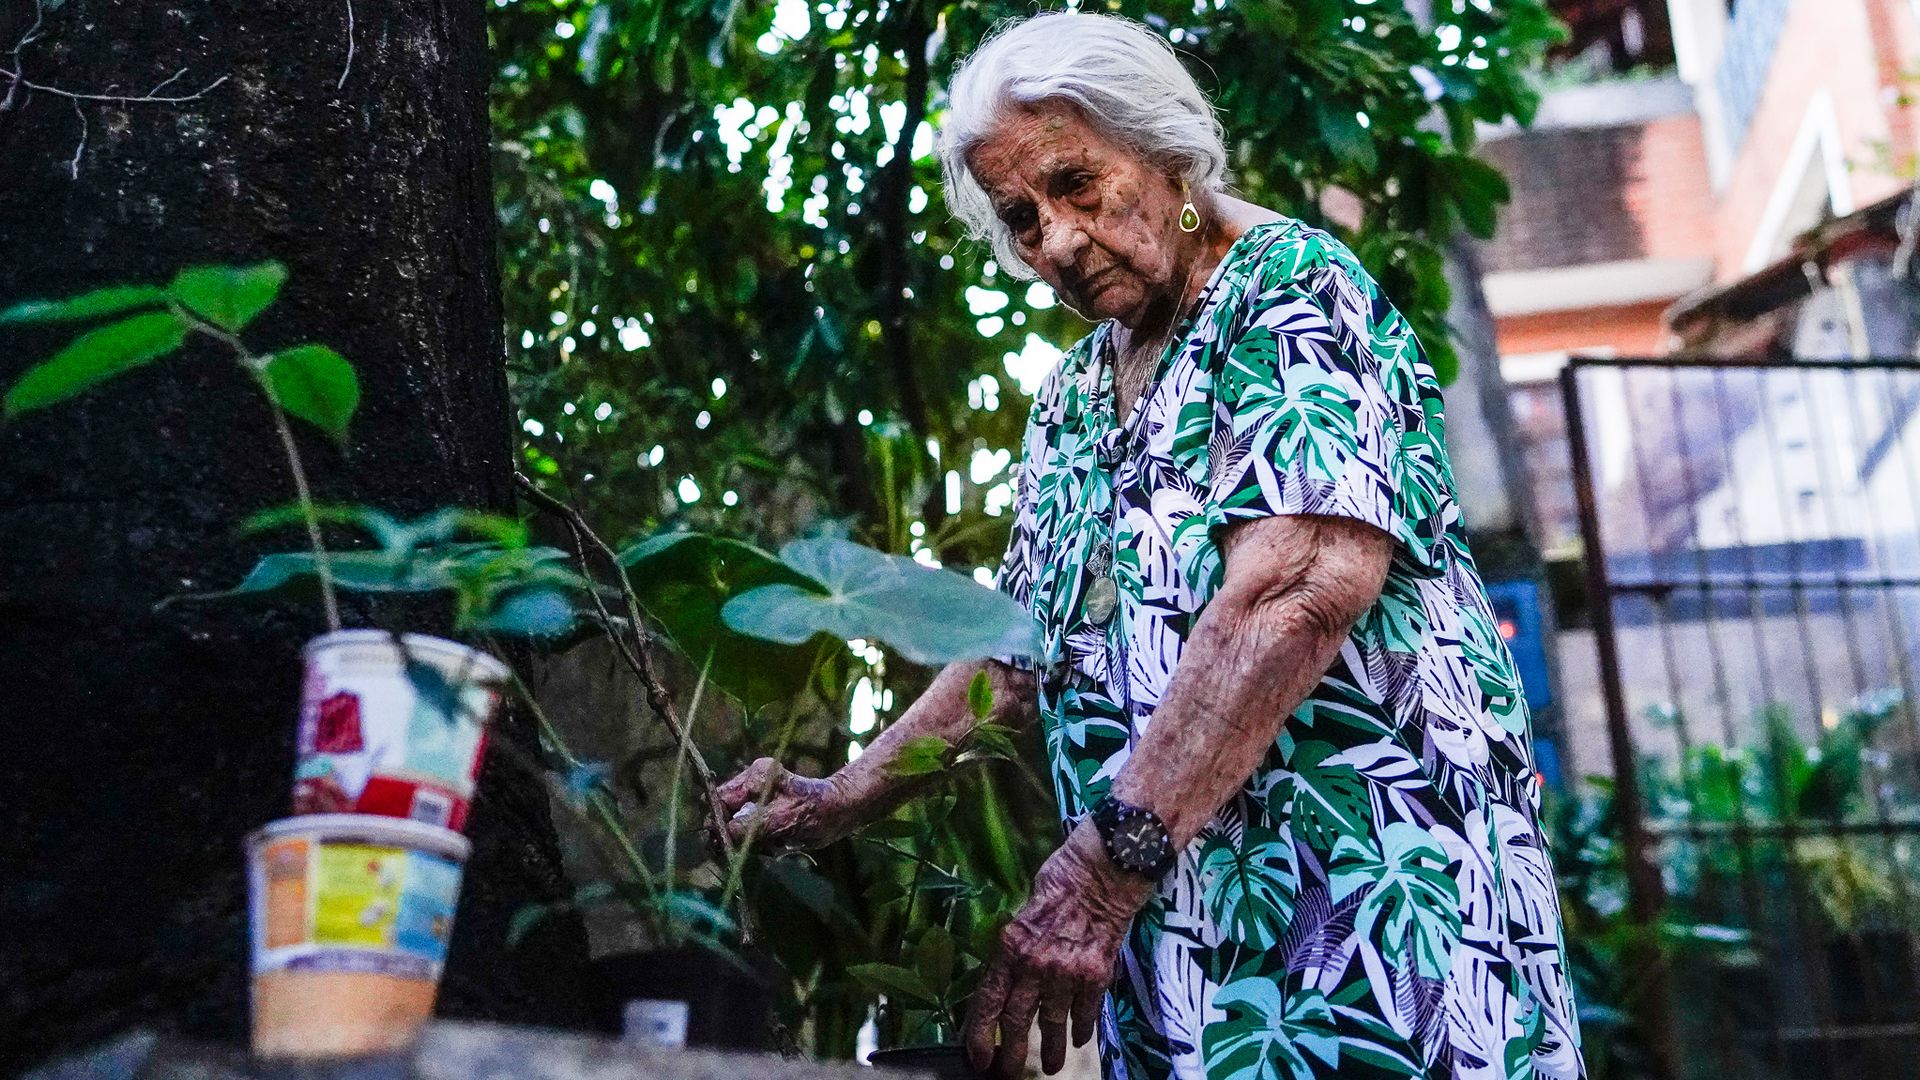 Angela Amorim, completou 100 anos. Apesar dessa idade ela é muito lúcida, sábia e com saúde. Considerada a pessoa mais velha do Bairro Jardim da Penha